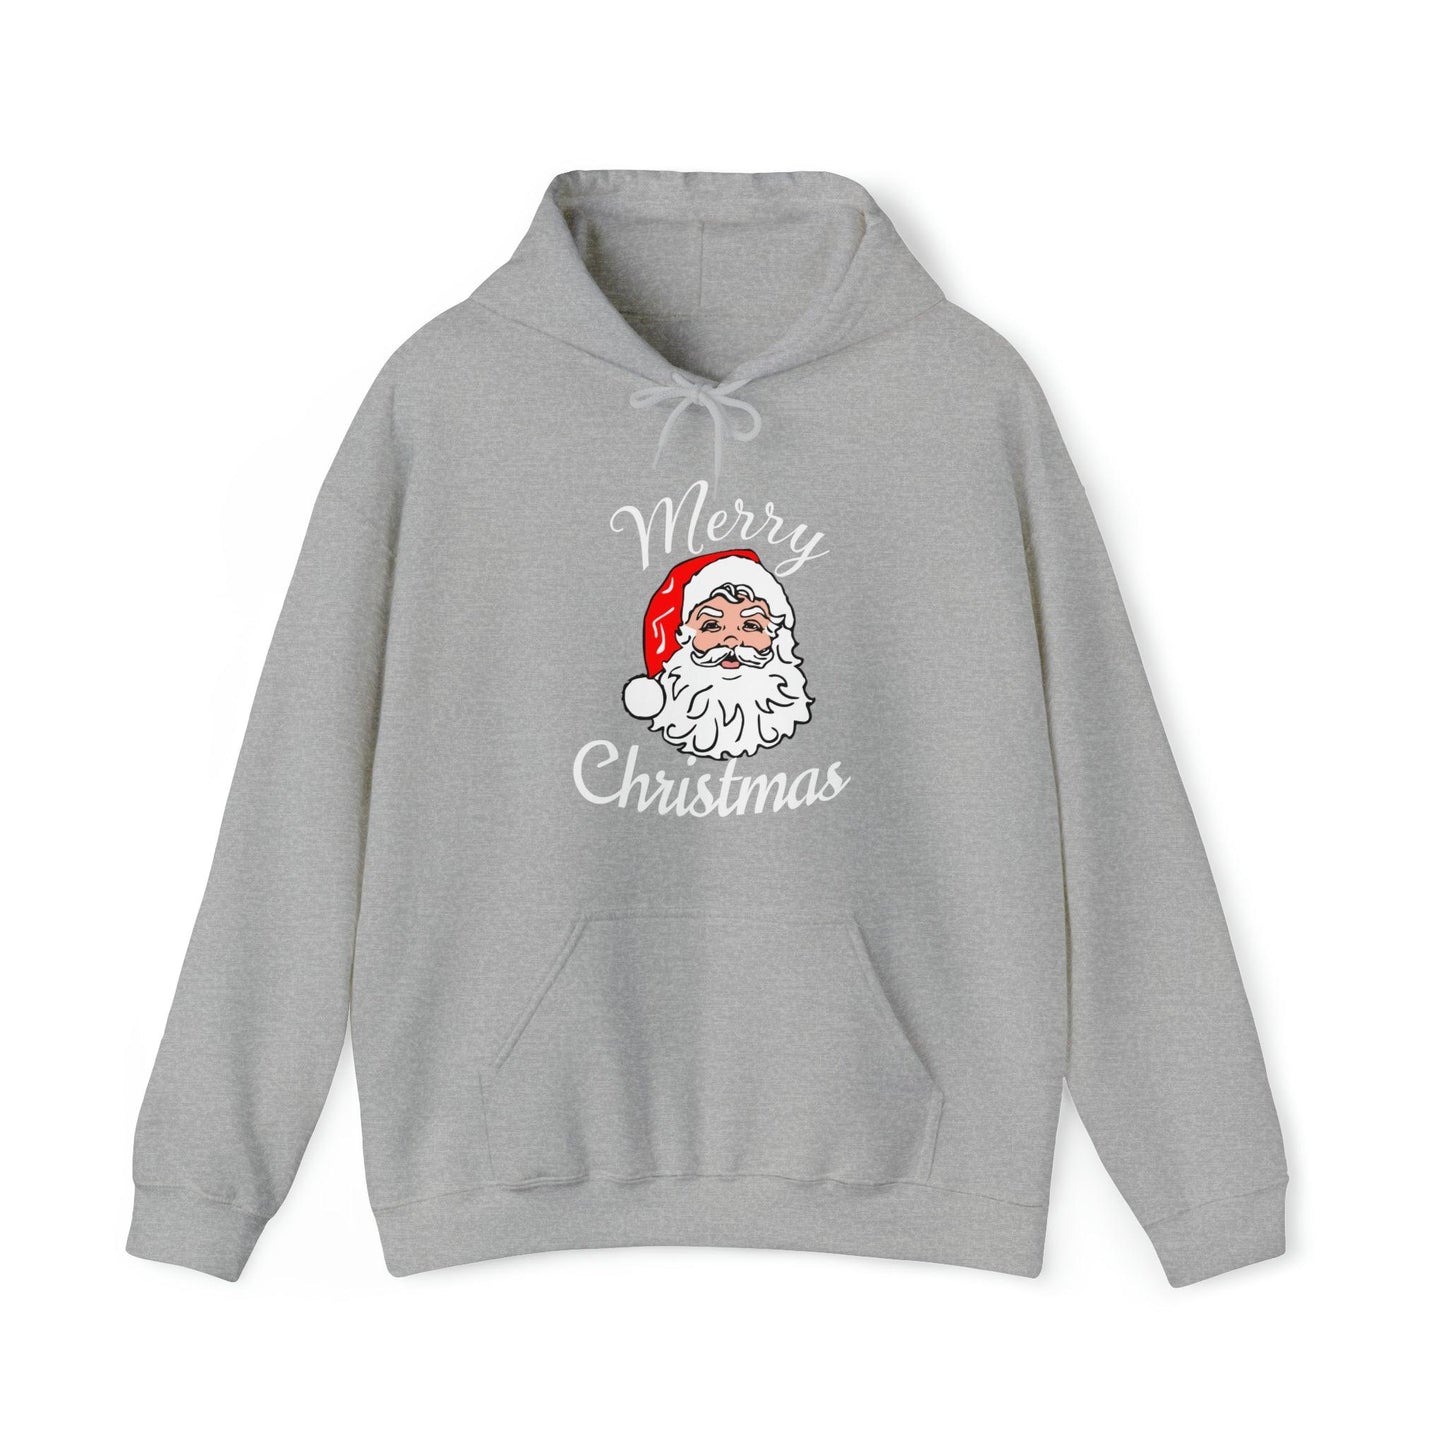 Santa Hoodie, Merry Christmas Hooded Sweatshirt, Christmas Shirt, Christmas Gift